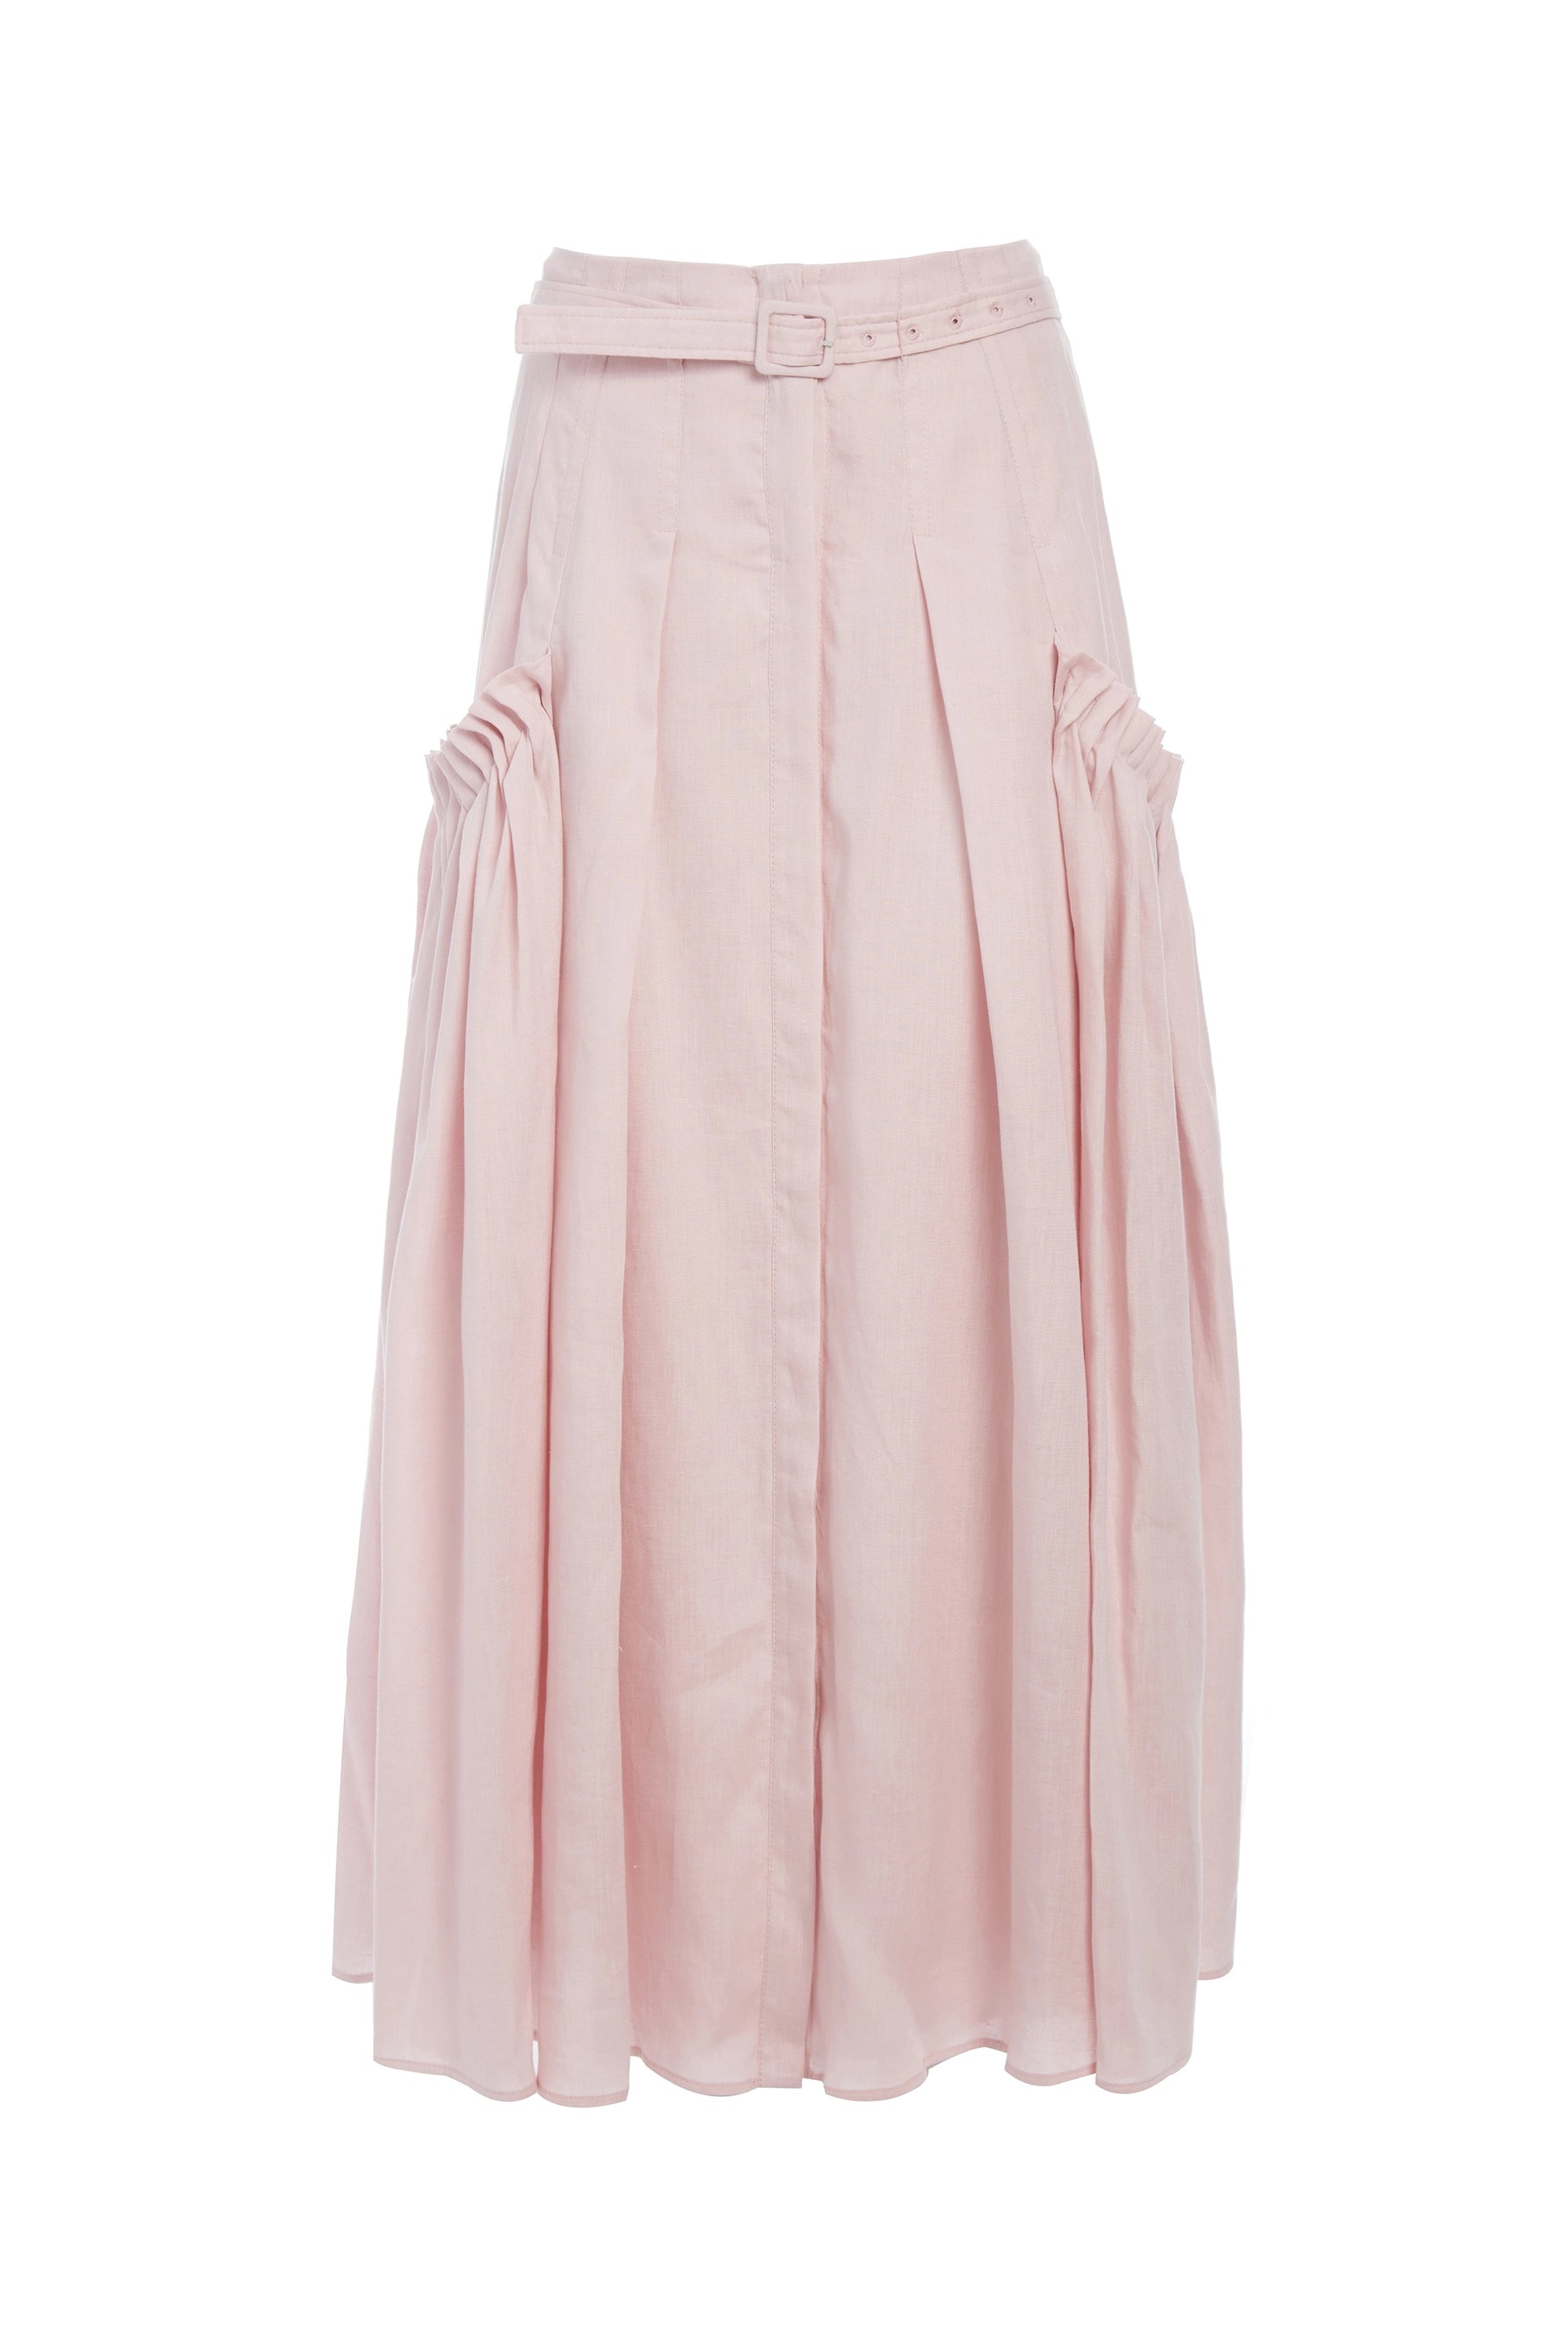 Cyrielle Skirt in Blush Linen - 1